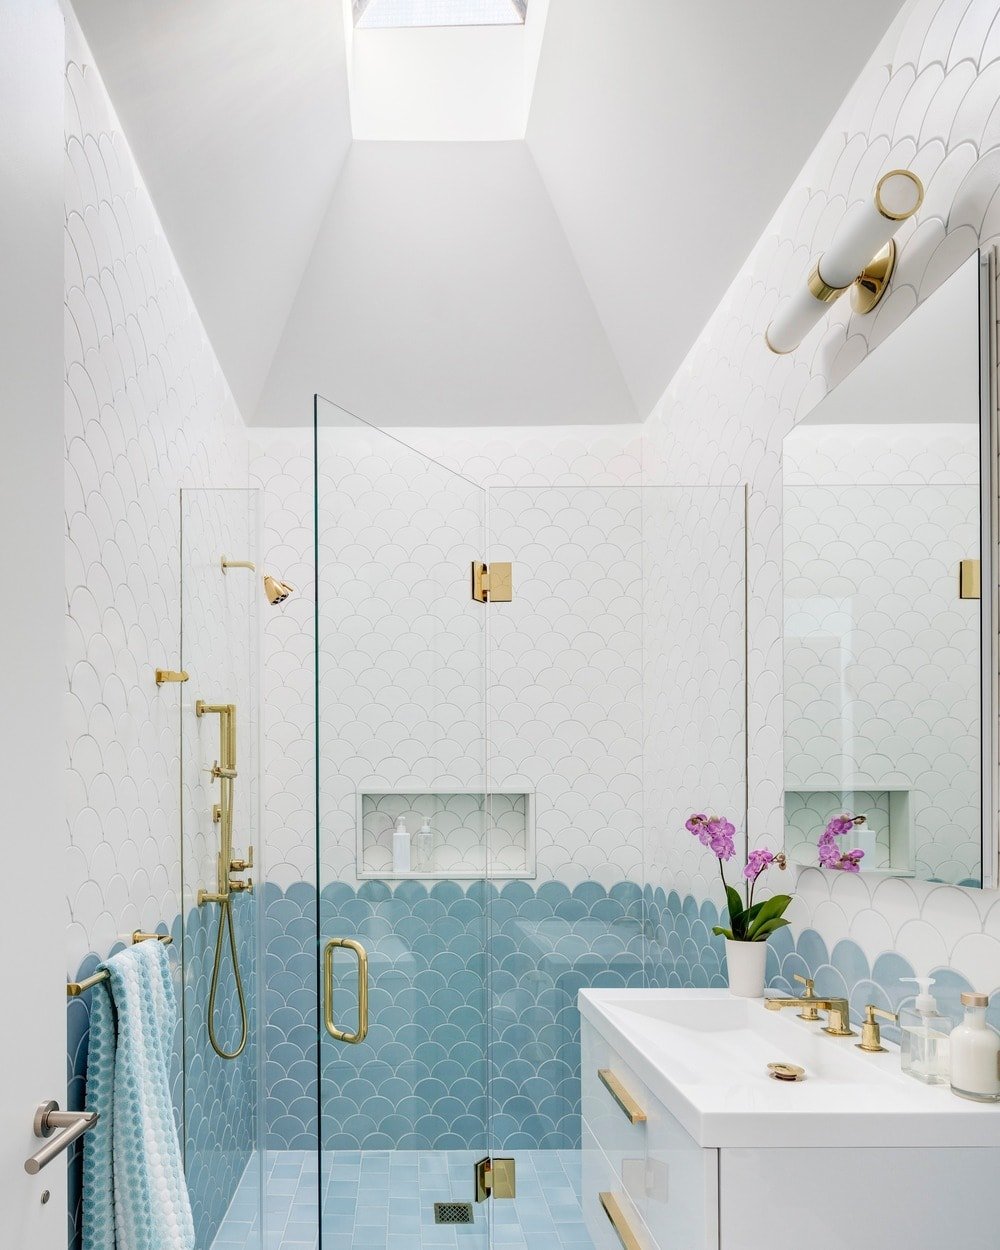 这个简单的浴室的墙上贴着瓷砖，从上部墙壁的白色瓷砖到齐腰高的浅蓝色瓷砖，看起来像鱼鳞。这给人一种美丽的锦鲤鱼的印象，浴室装置上的少数金色口音在玻璃和白色元素的映衬下更加突出。